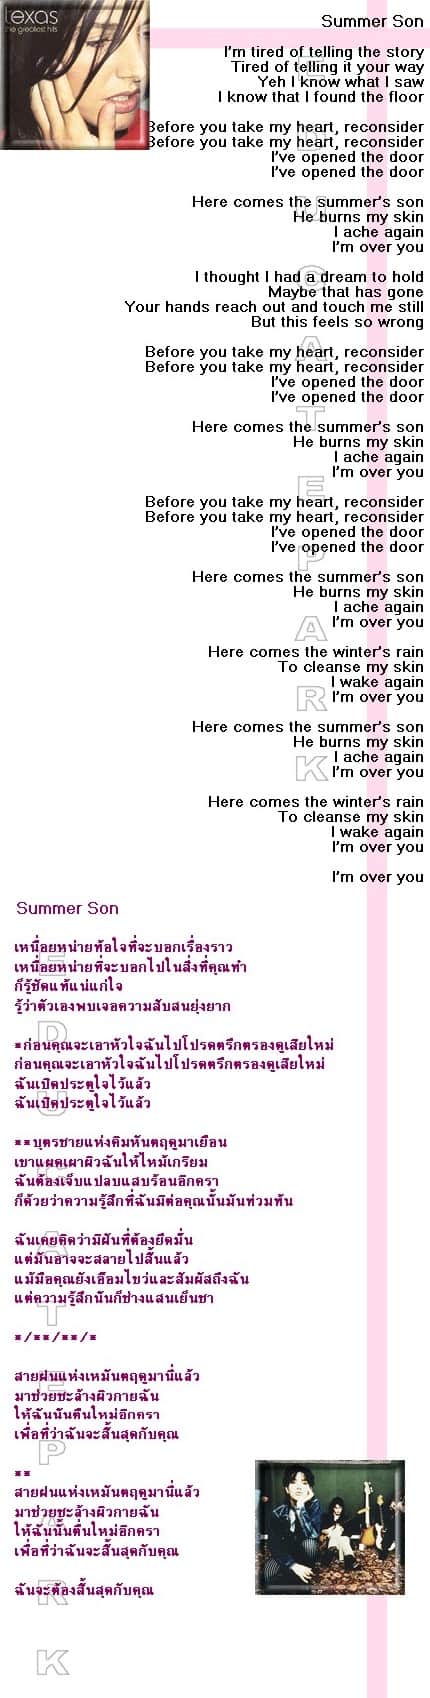 แปลเพลง Summer Son - Texas